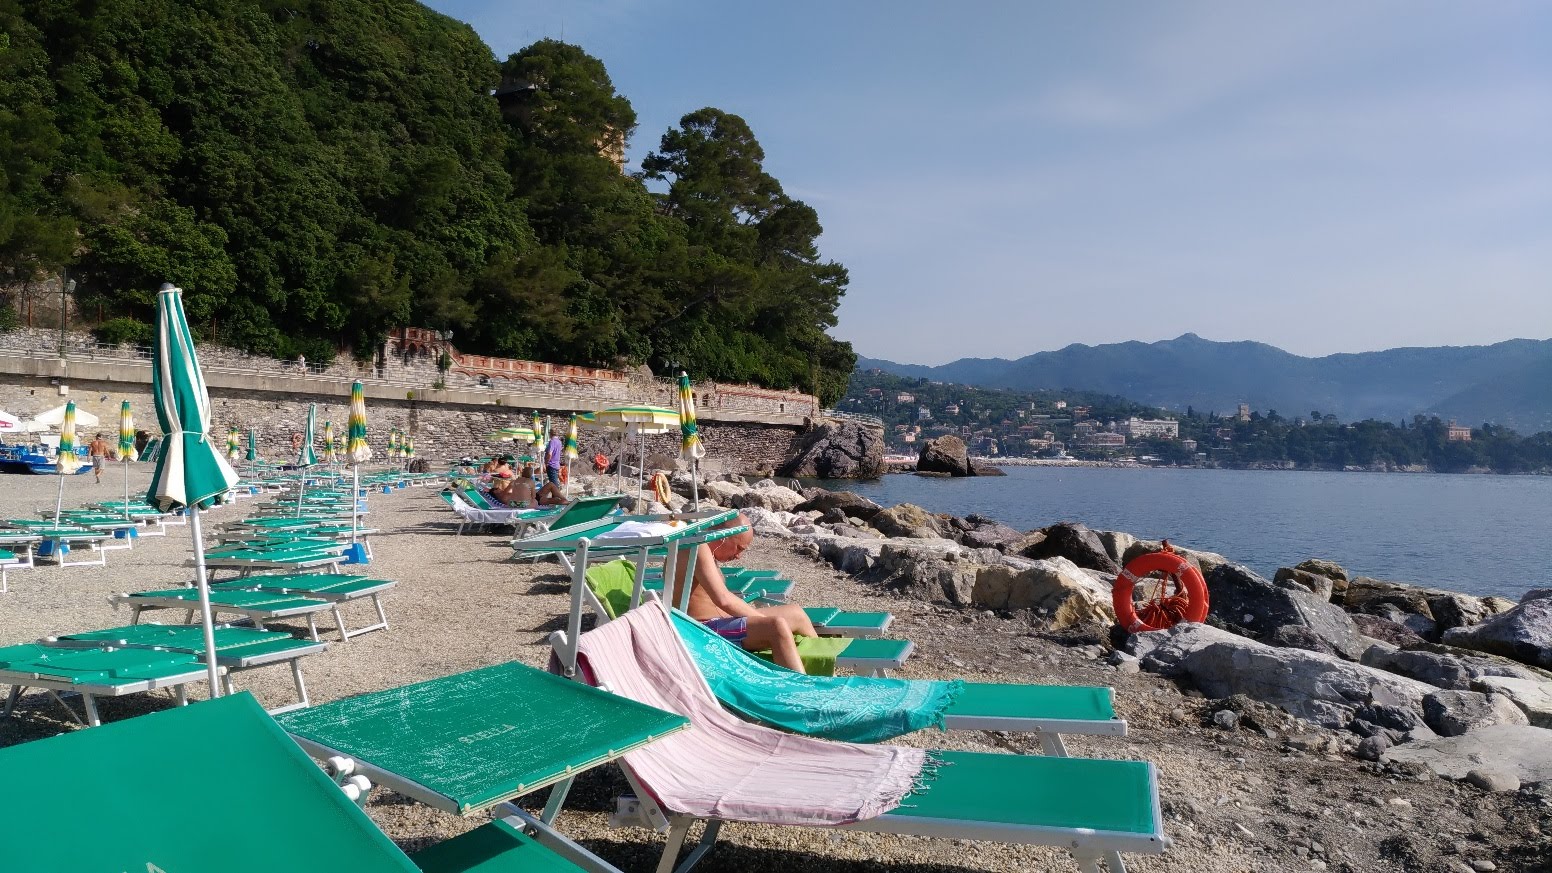 Fotografie cu Gio e Rino beach cu nivelul de curățenie in medie